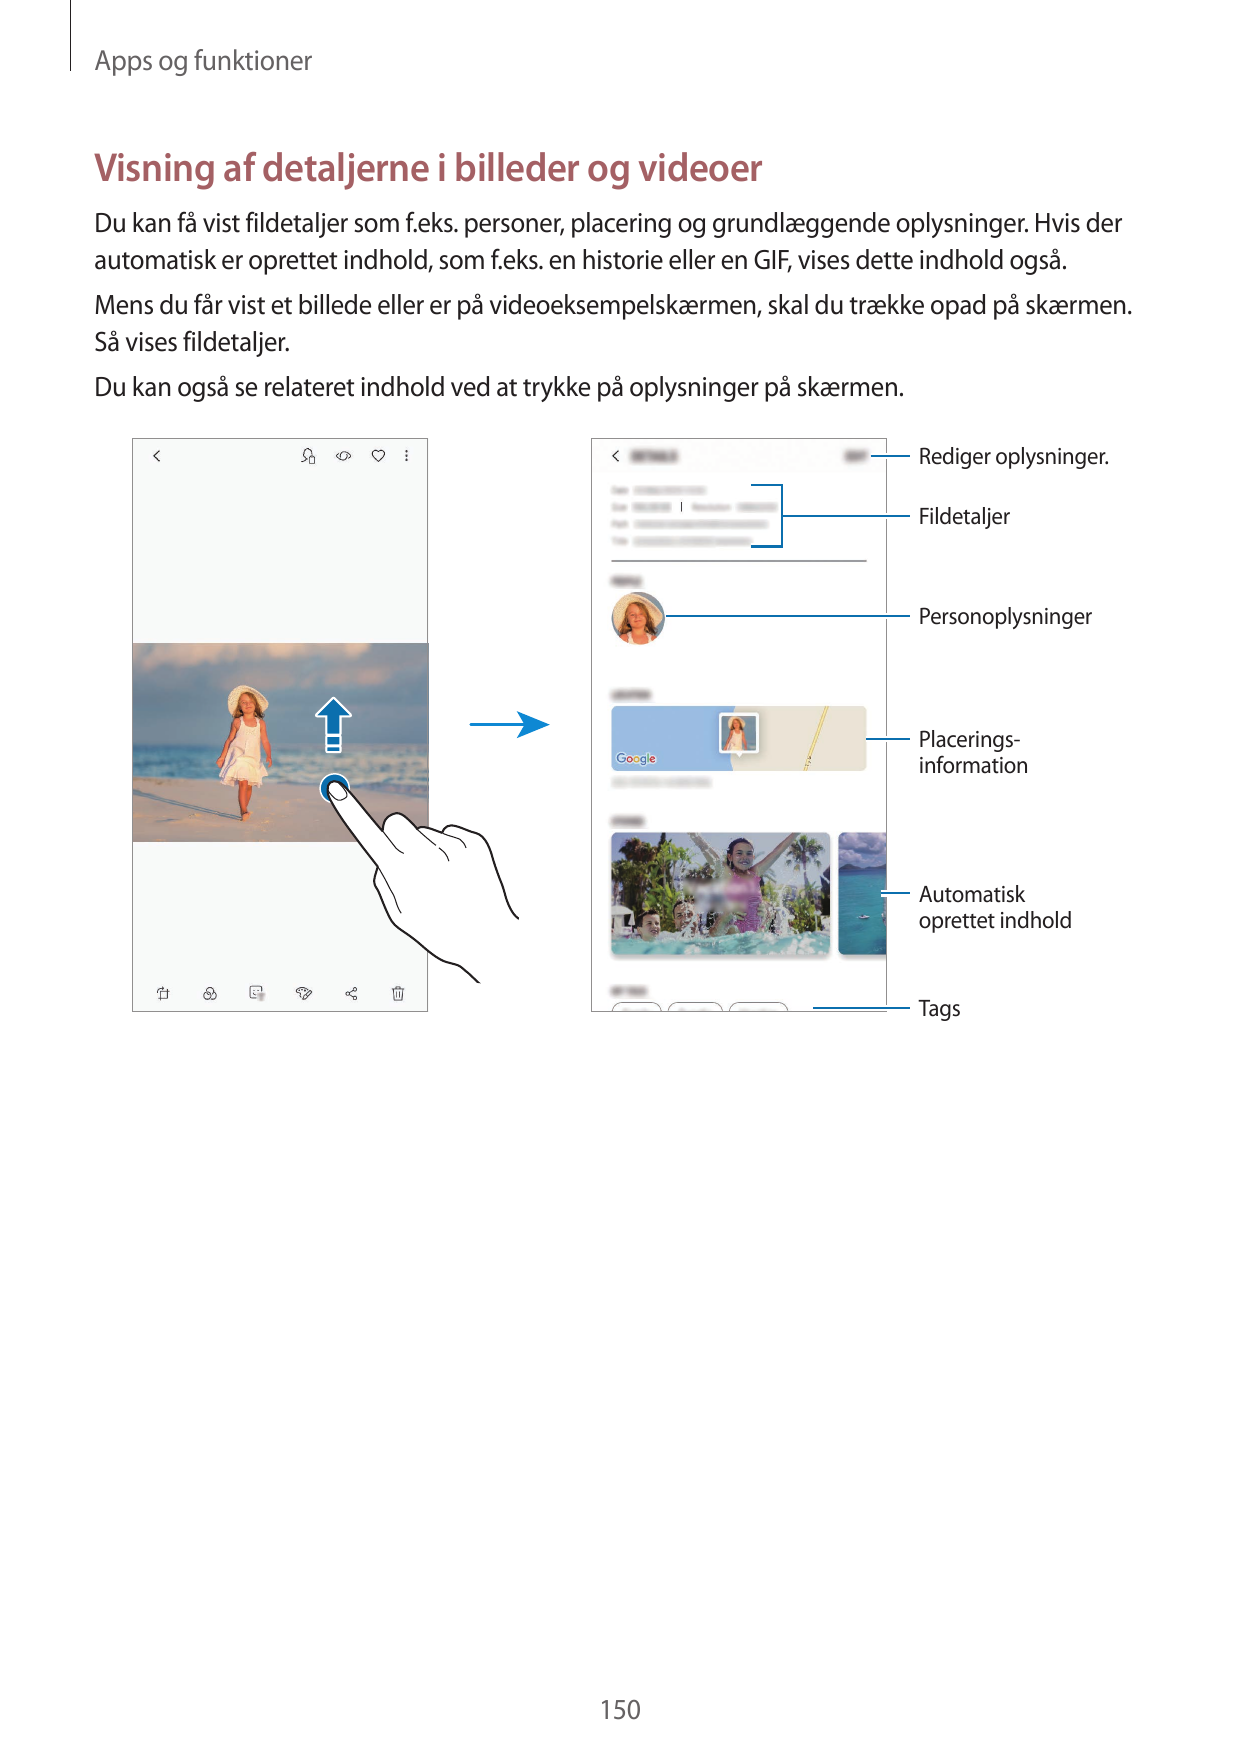 Apps og funktionerVisning af detaljerne i billeder og videoerDu kan få vist fildetaljer som f.eks. personer, placering og grundl